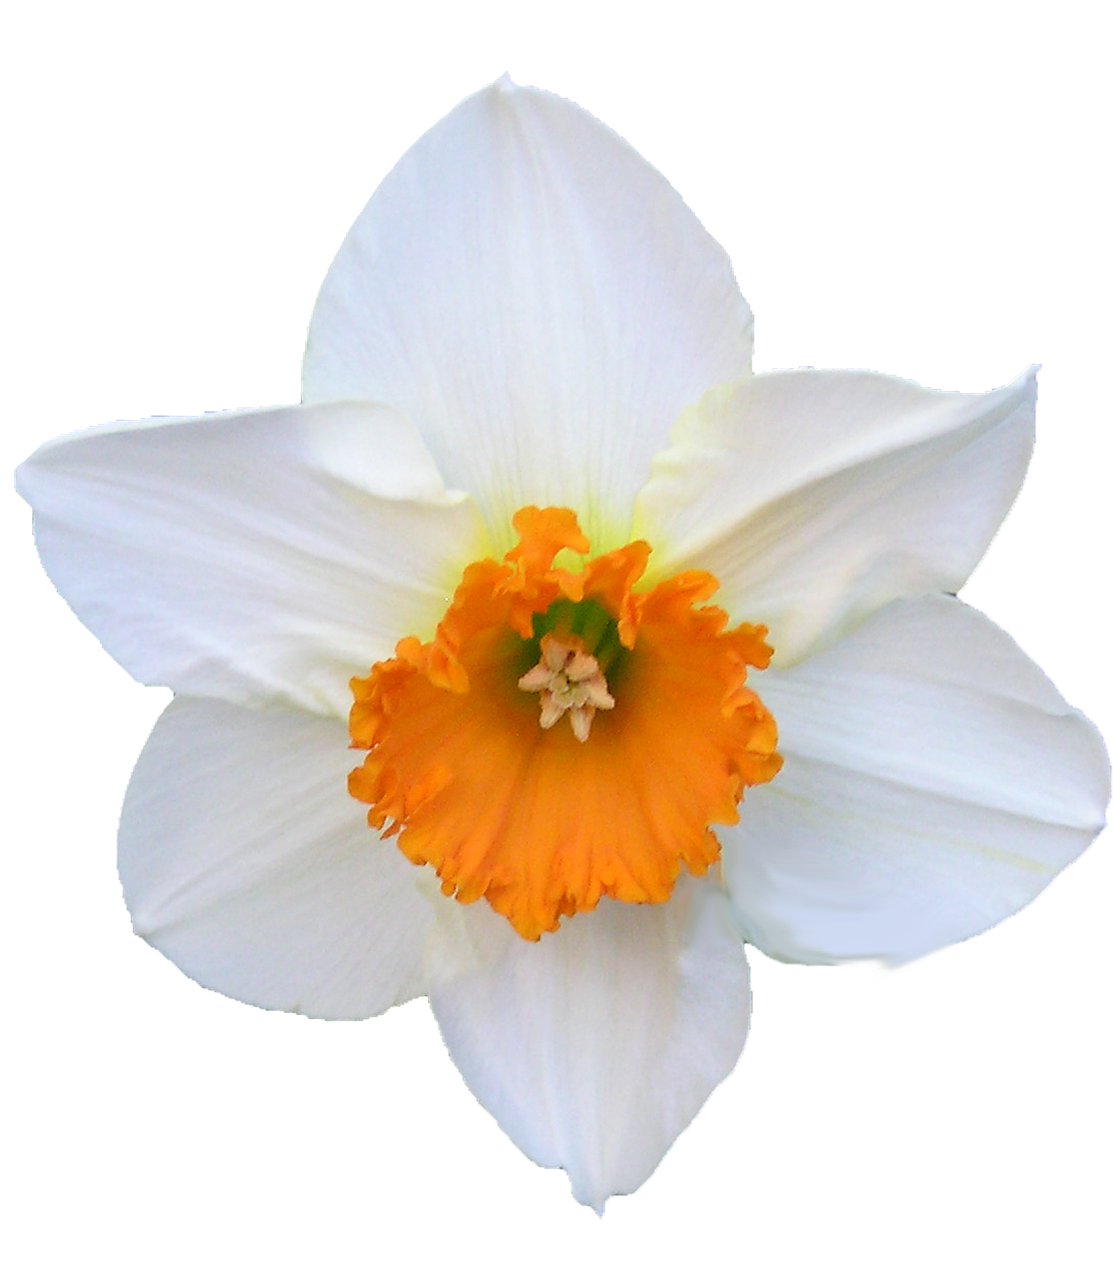 daffodil white and orange free photo